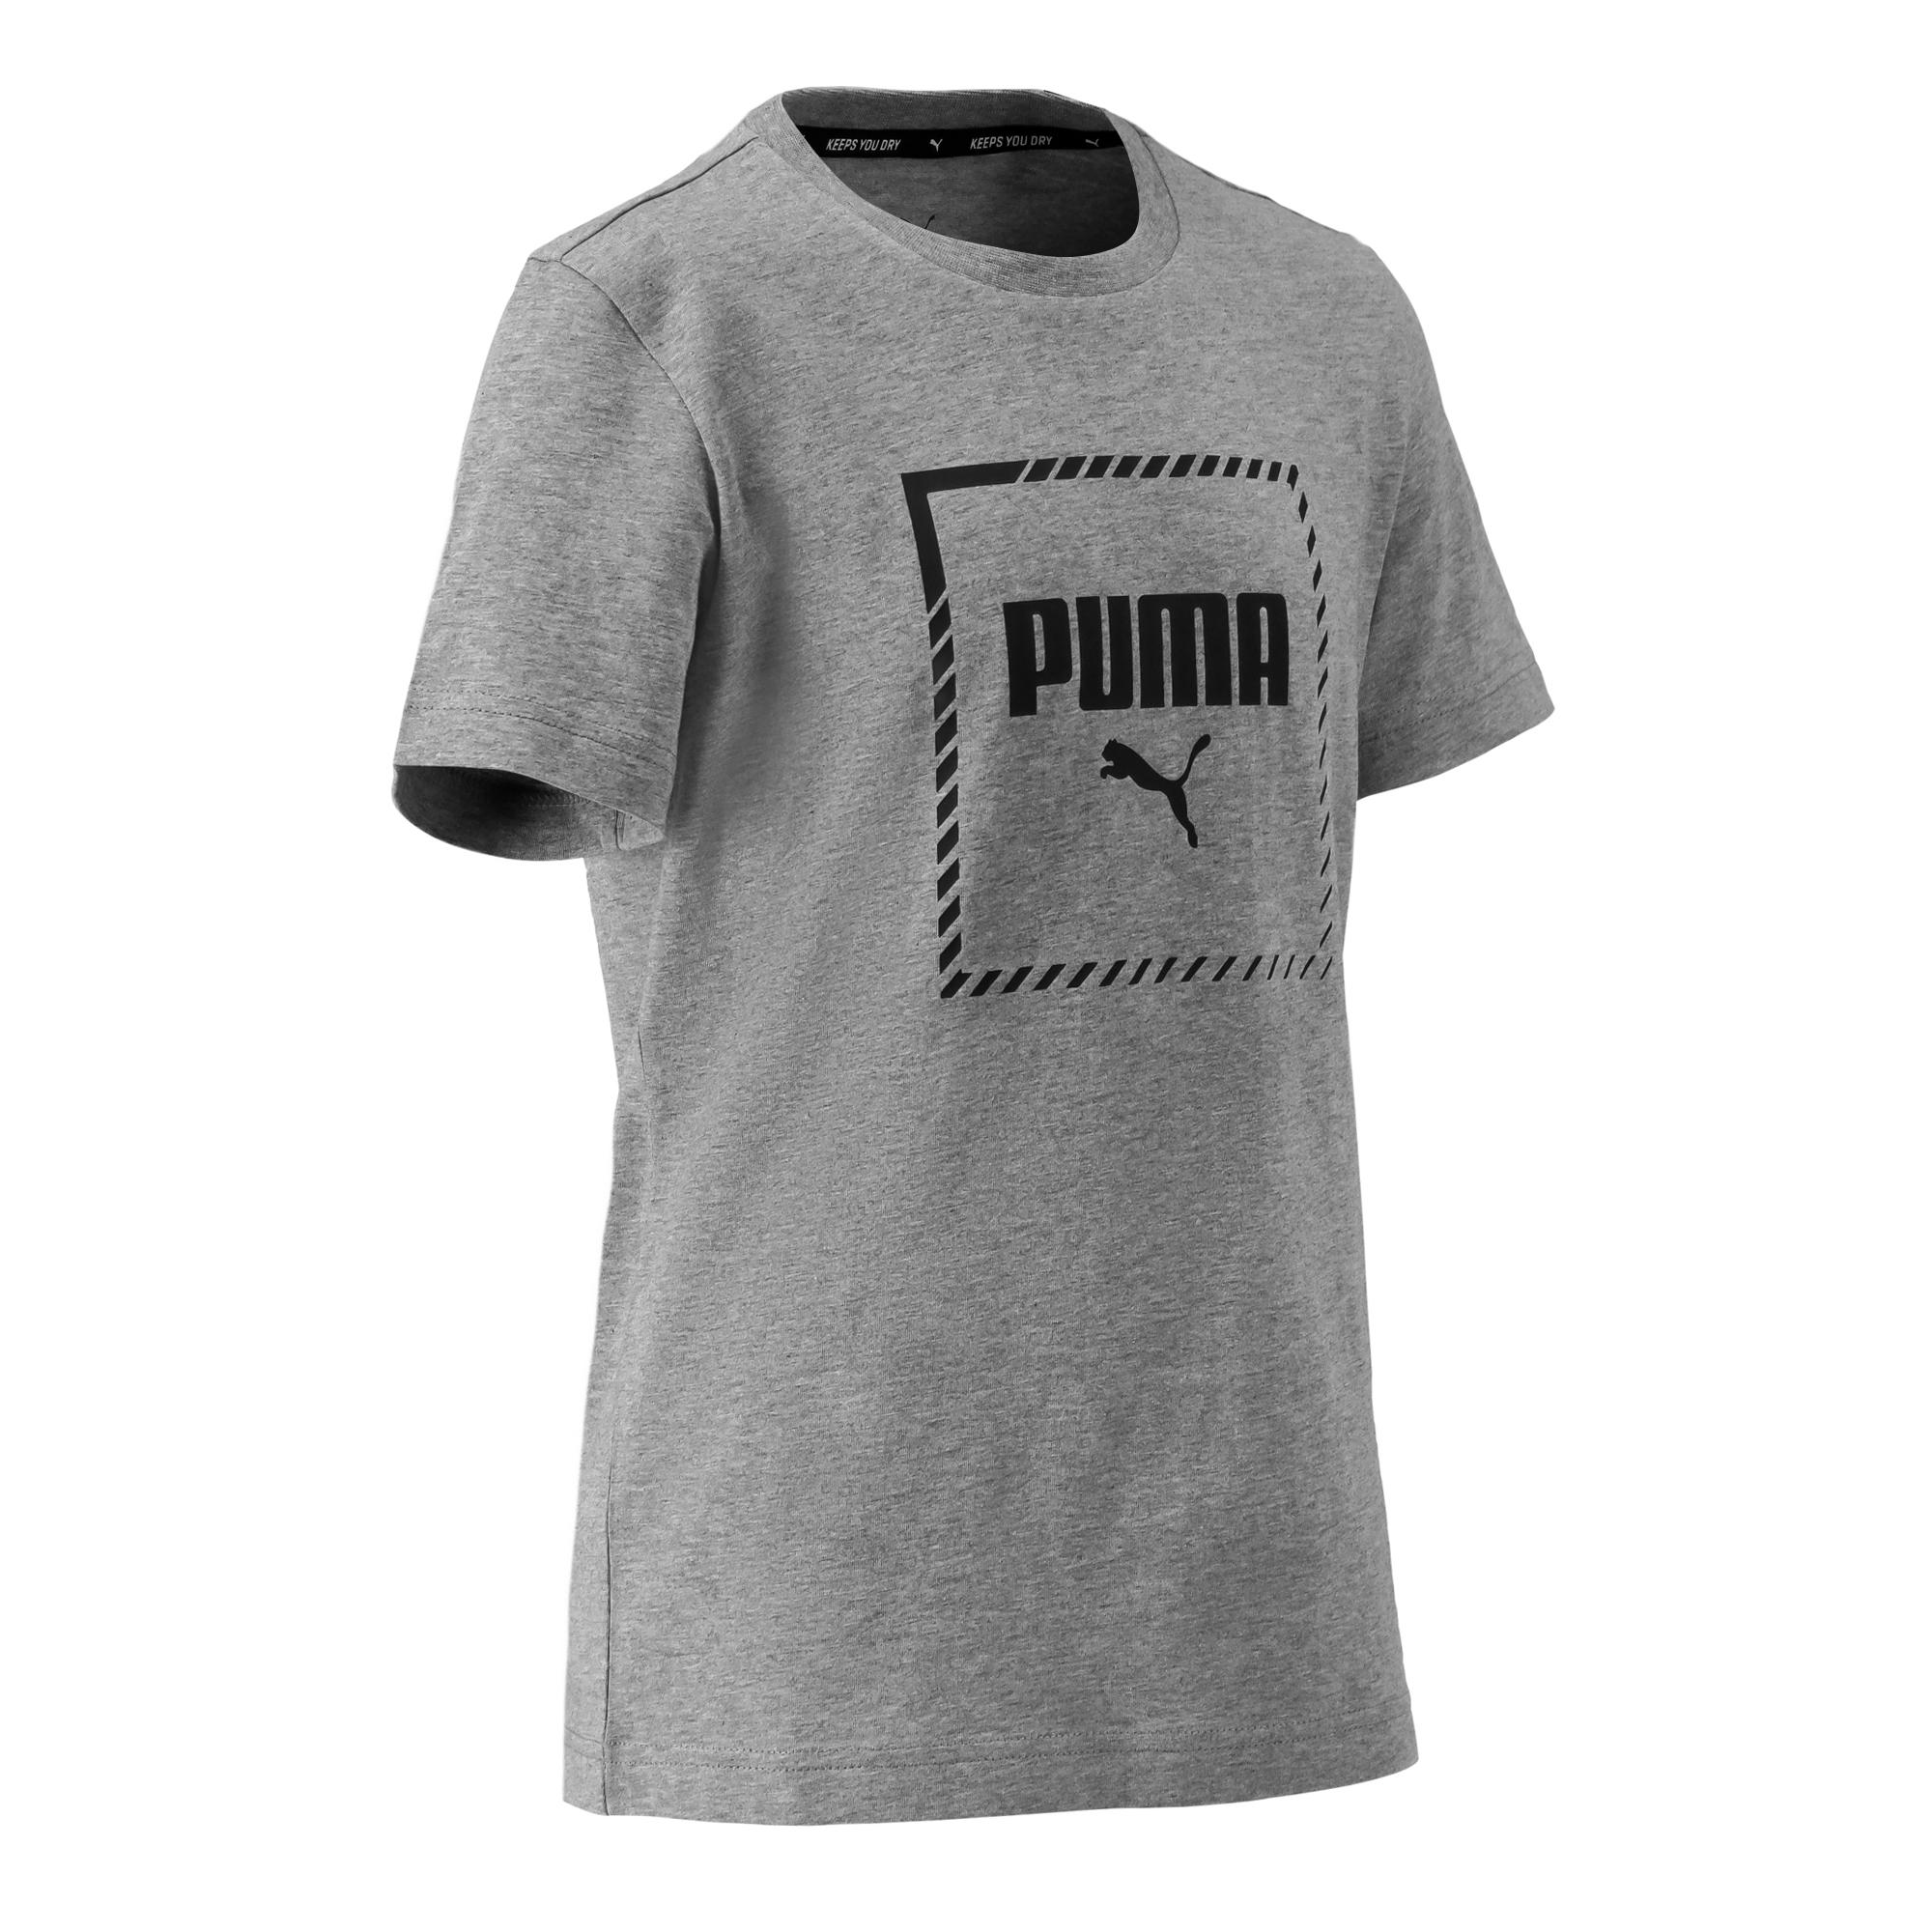 decathlon camiseta puma